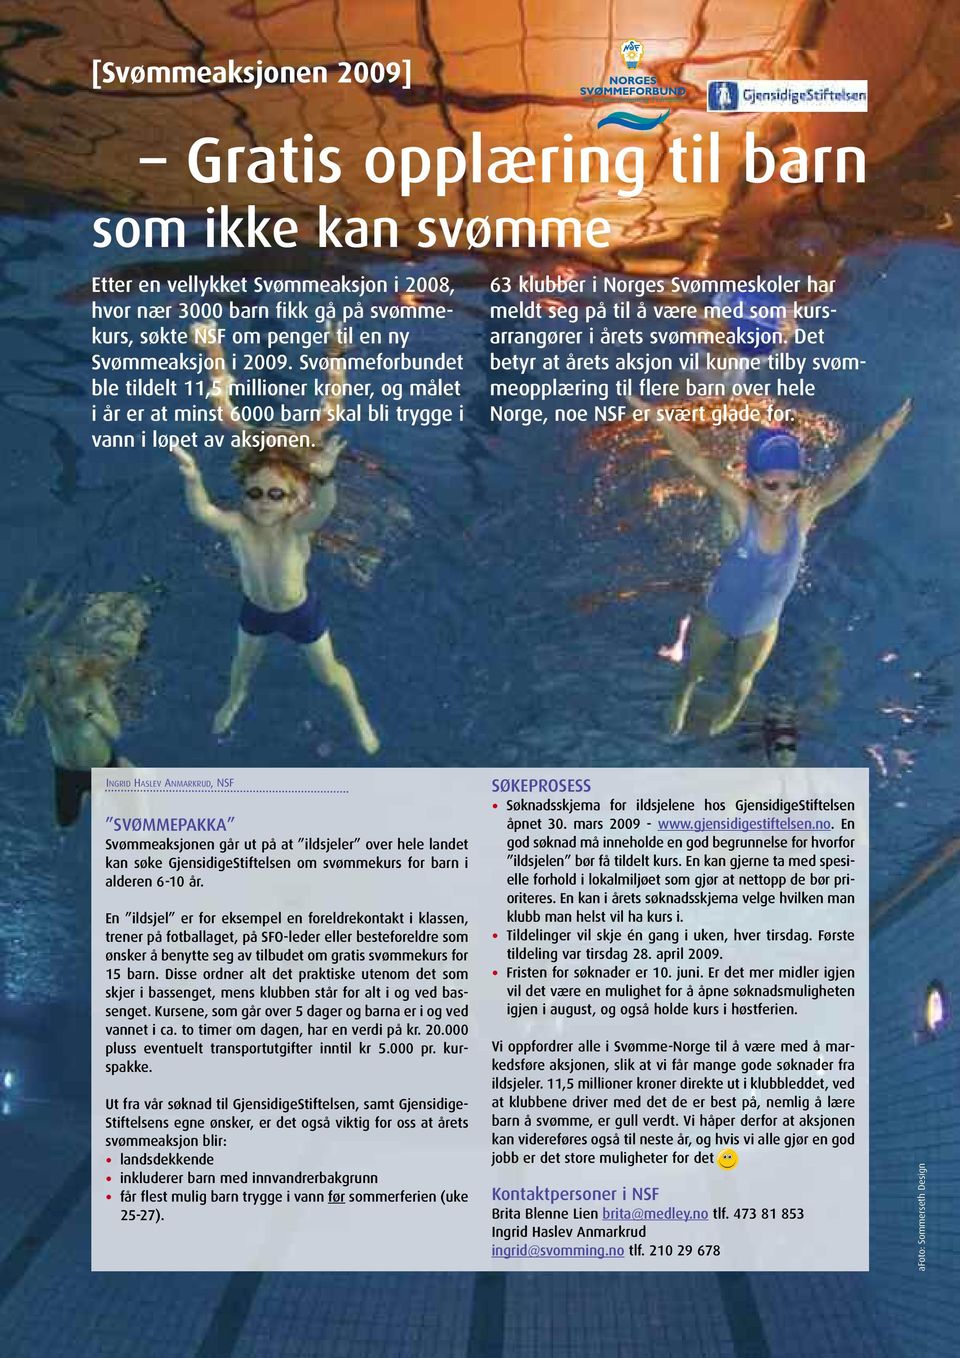 63 klubber i Norges Svømmeskoler har meldt seg på til å være med som kurs - arrangører i årets svømmeaksjon.